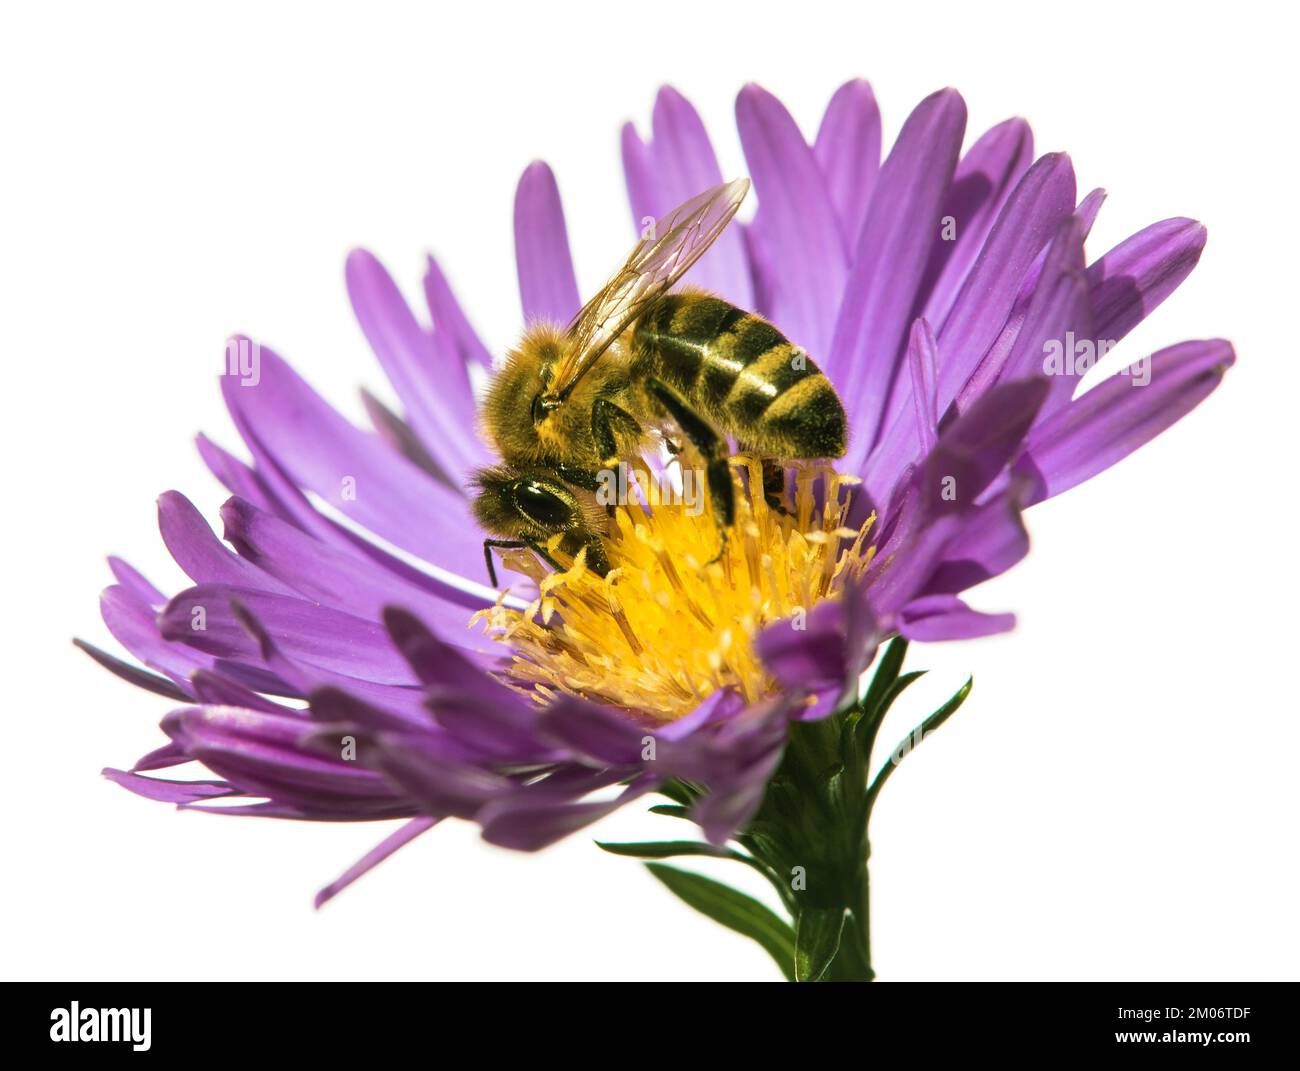 abeja o abeja melífera en latín Apis mellifera, abeja de miel europea o occidental, sobre la flor azul violeta o púrpura aislada sobre fondo blanco Foto de stock